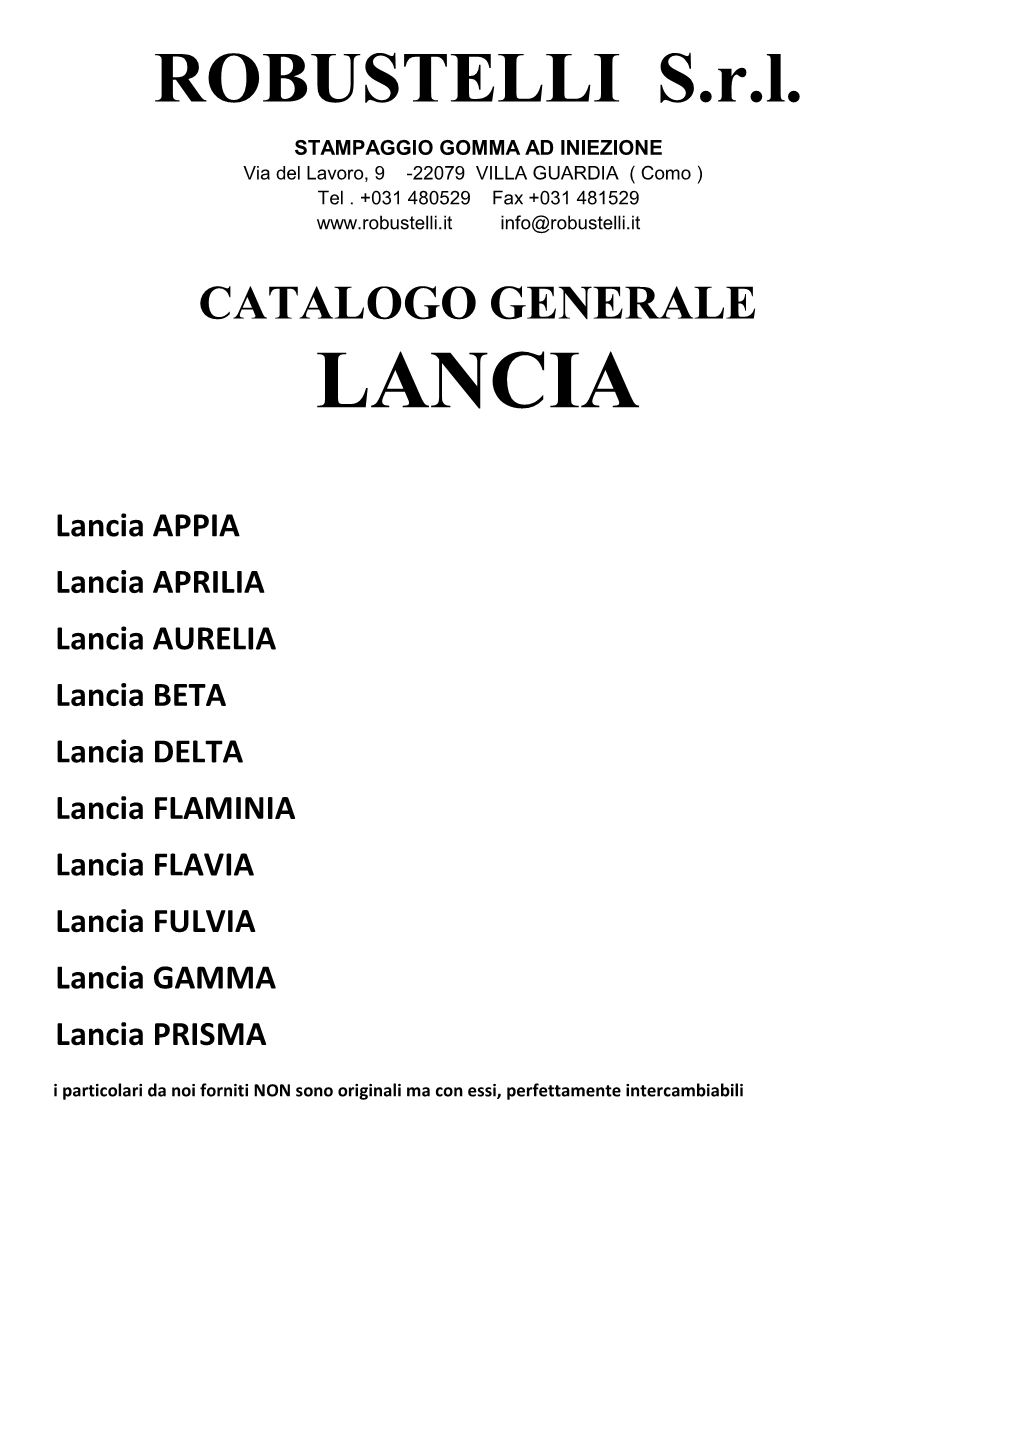 Catalogo Generale Lancia Rev. 06.2021.Xlsx